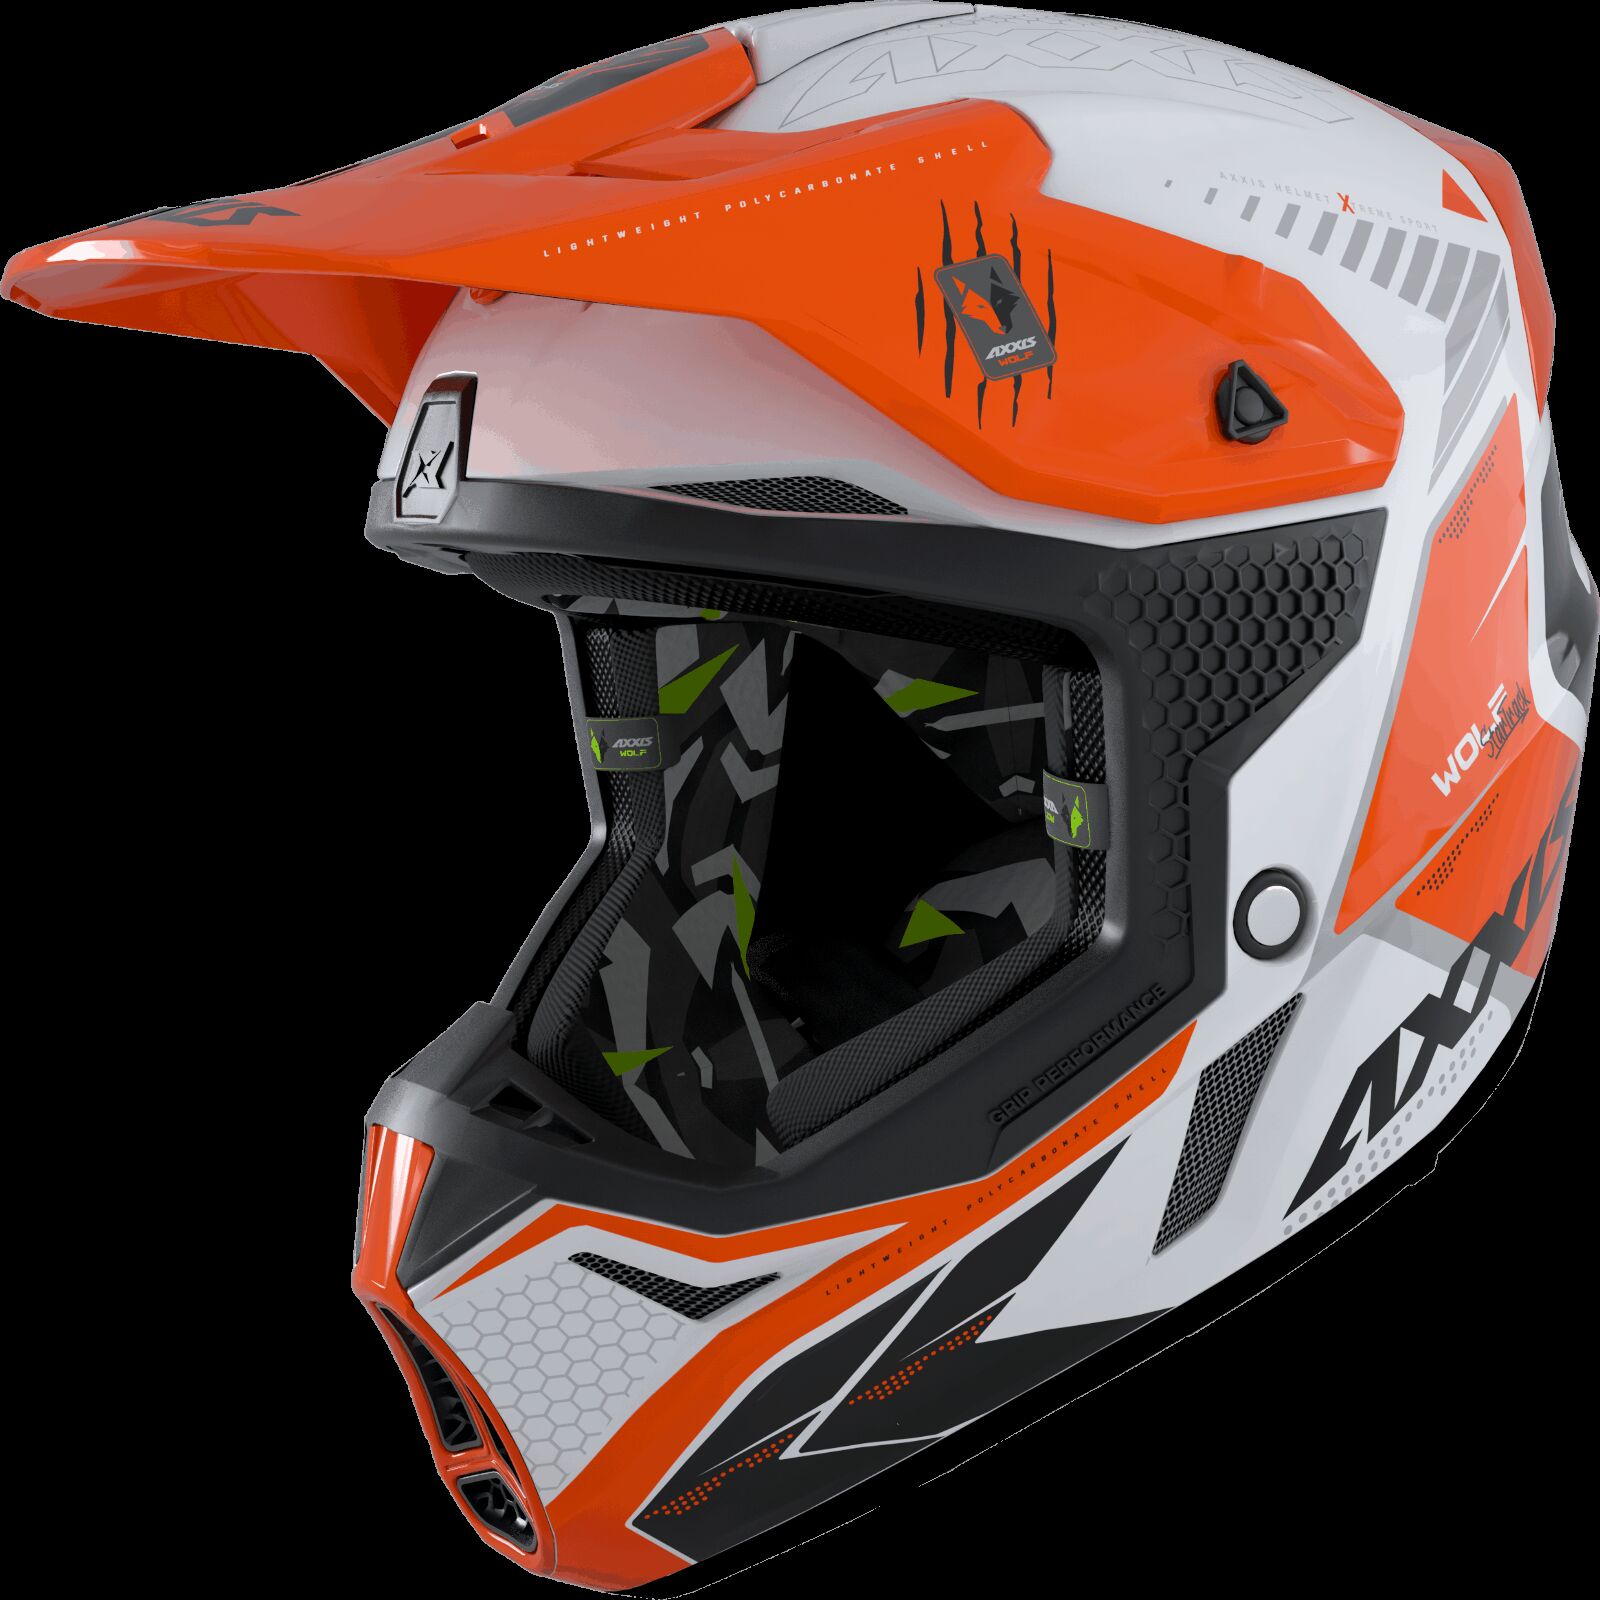 Obrázek produktu Motokrosová helma AXXIS WOLF ABS star track a4 lesklá fluor oranžová XXL 42587410408